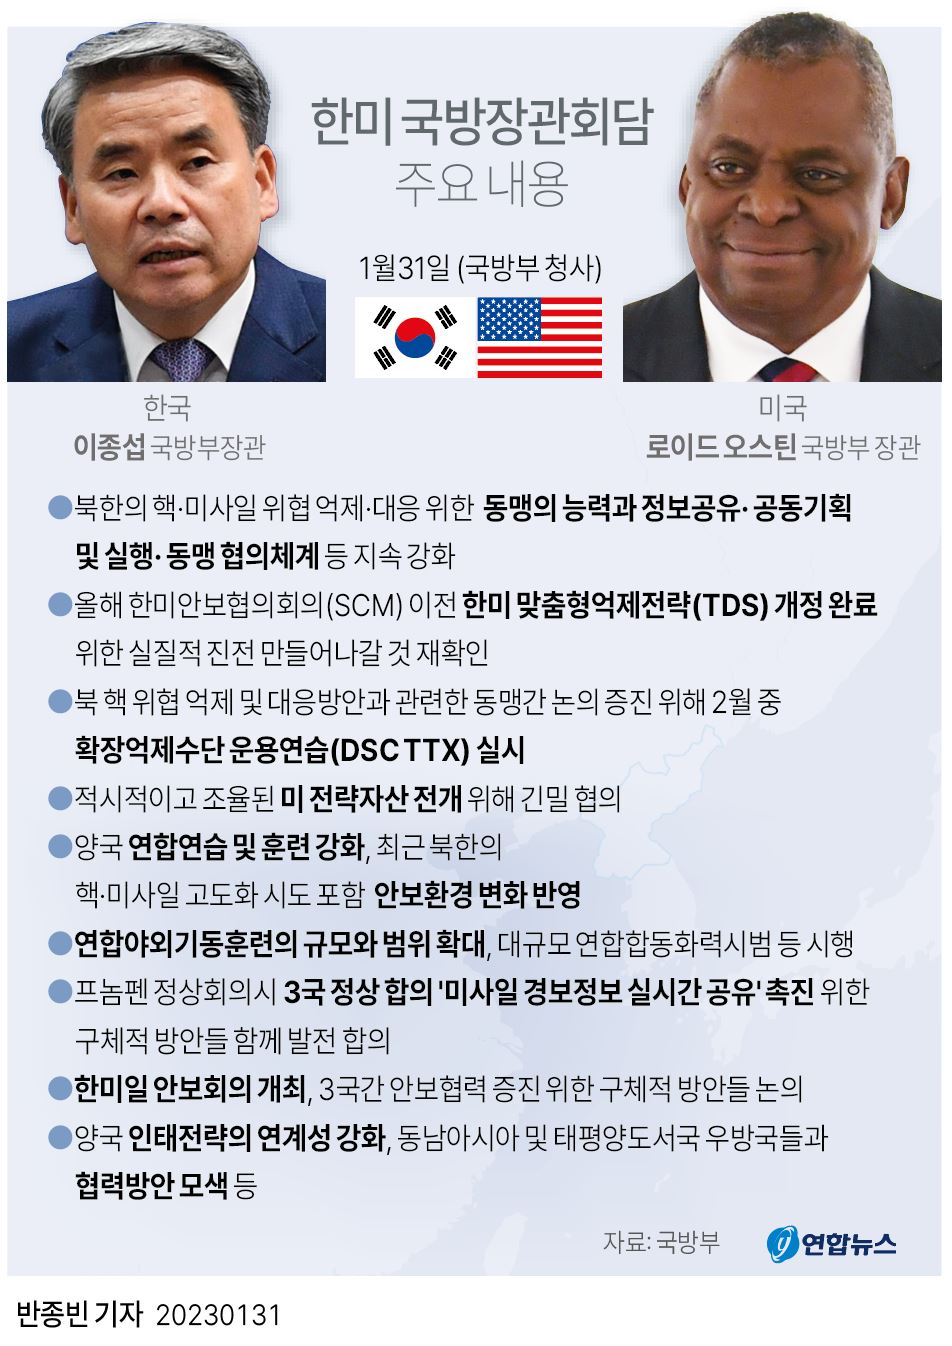 [그래픽] 한미 국방장관회담 주요 내용